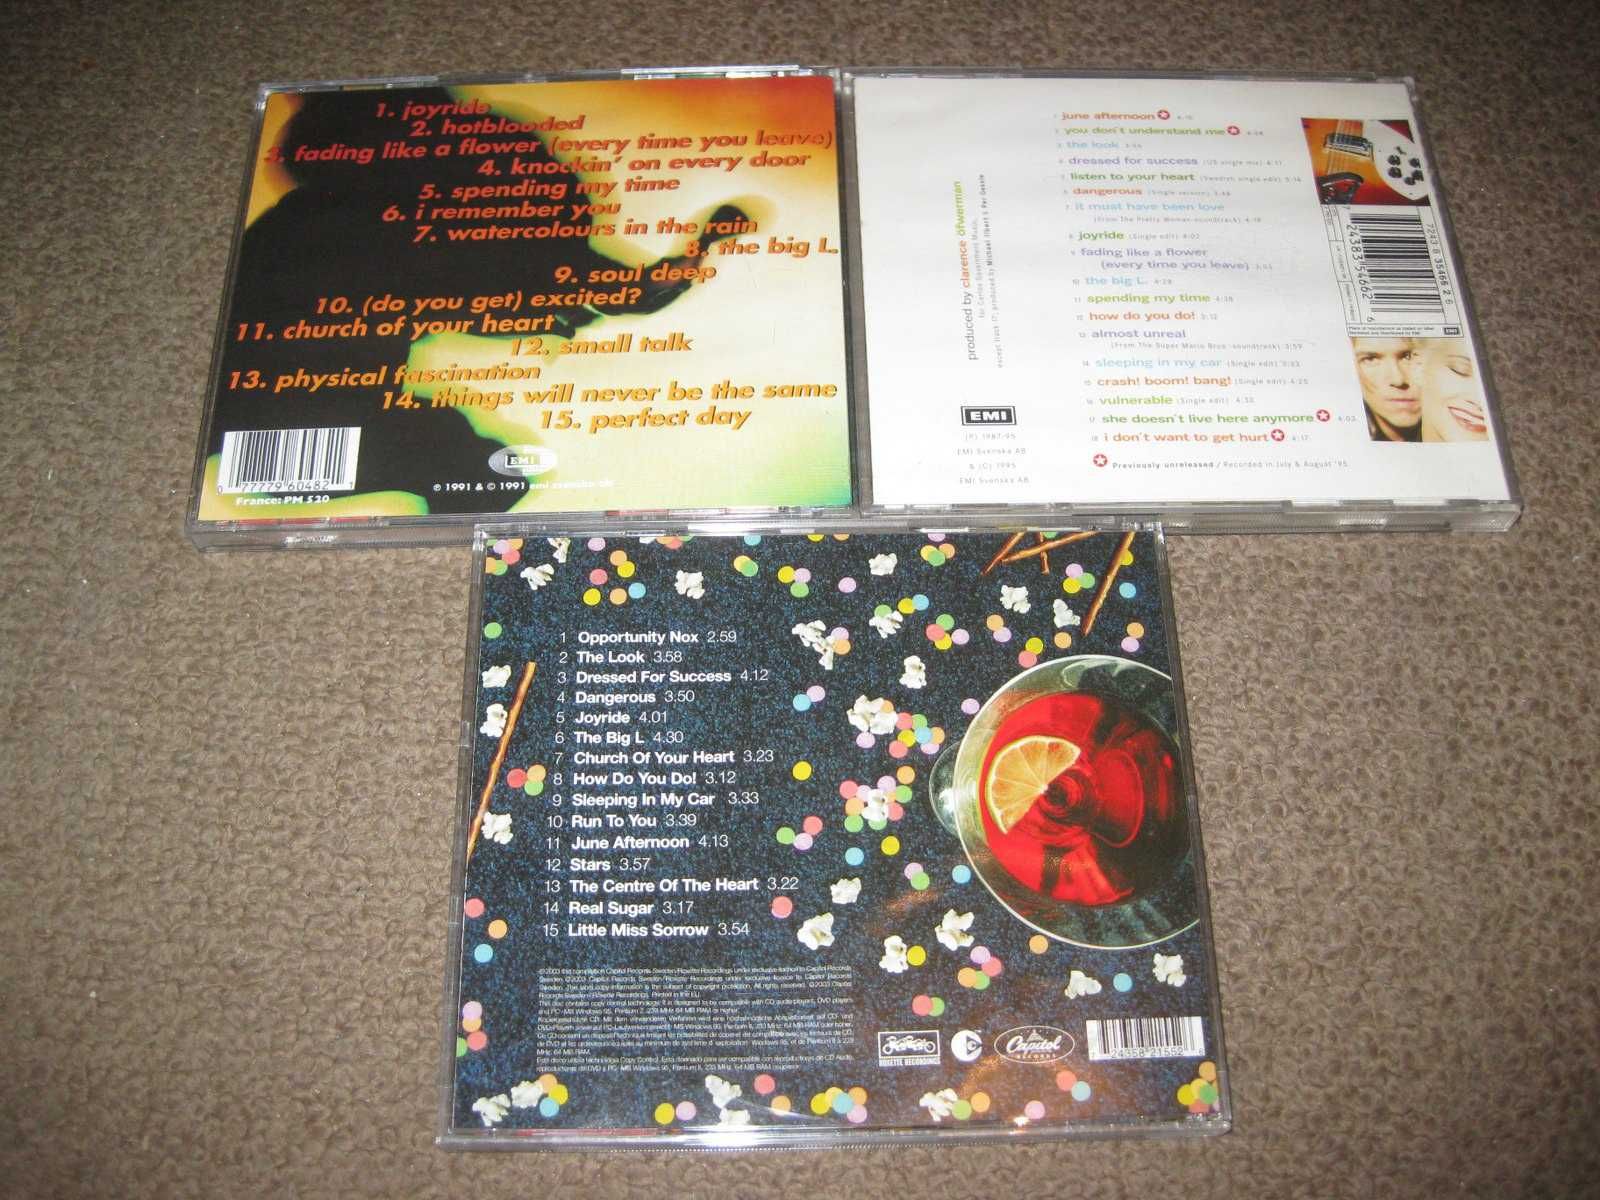 3 CDs dos "Roxette" Portes Grátis!